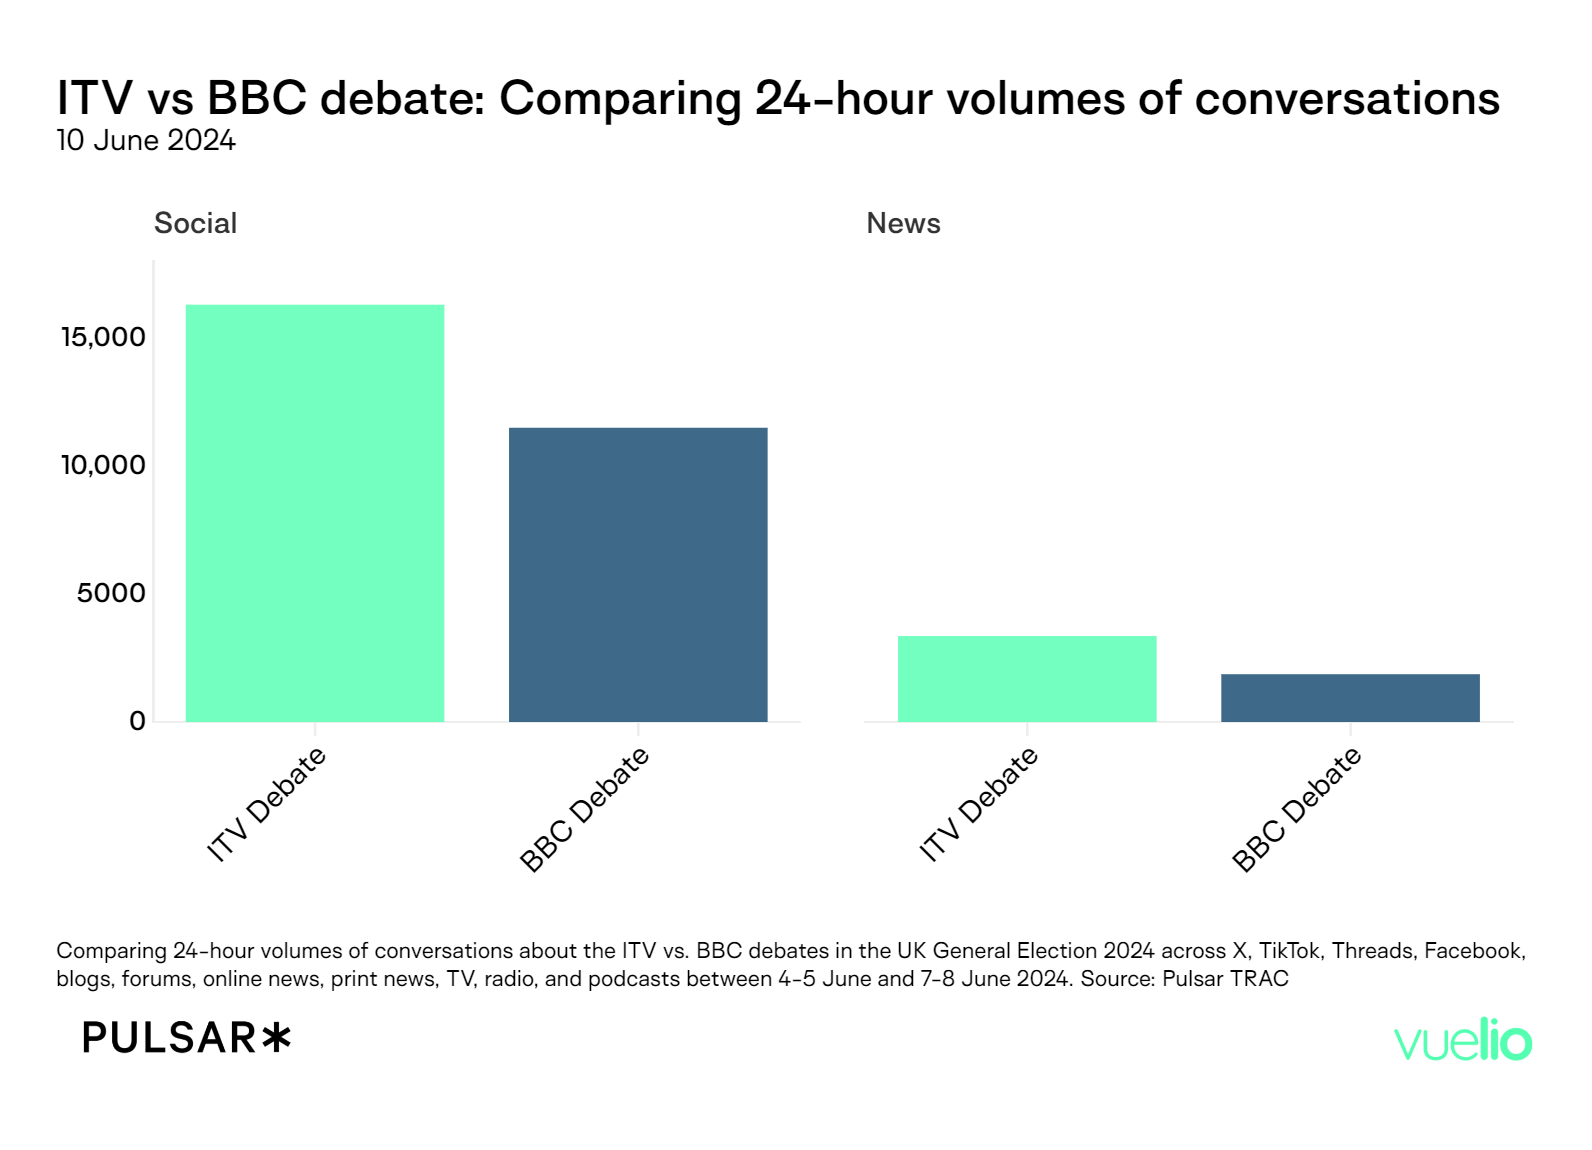 ITV vs BBC volume comparison